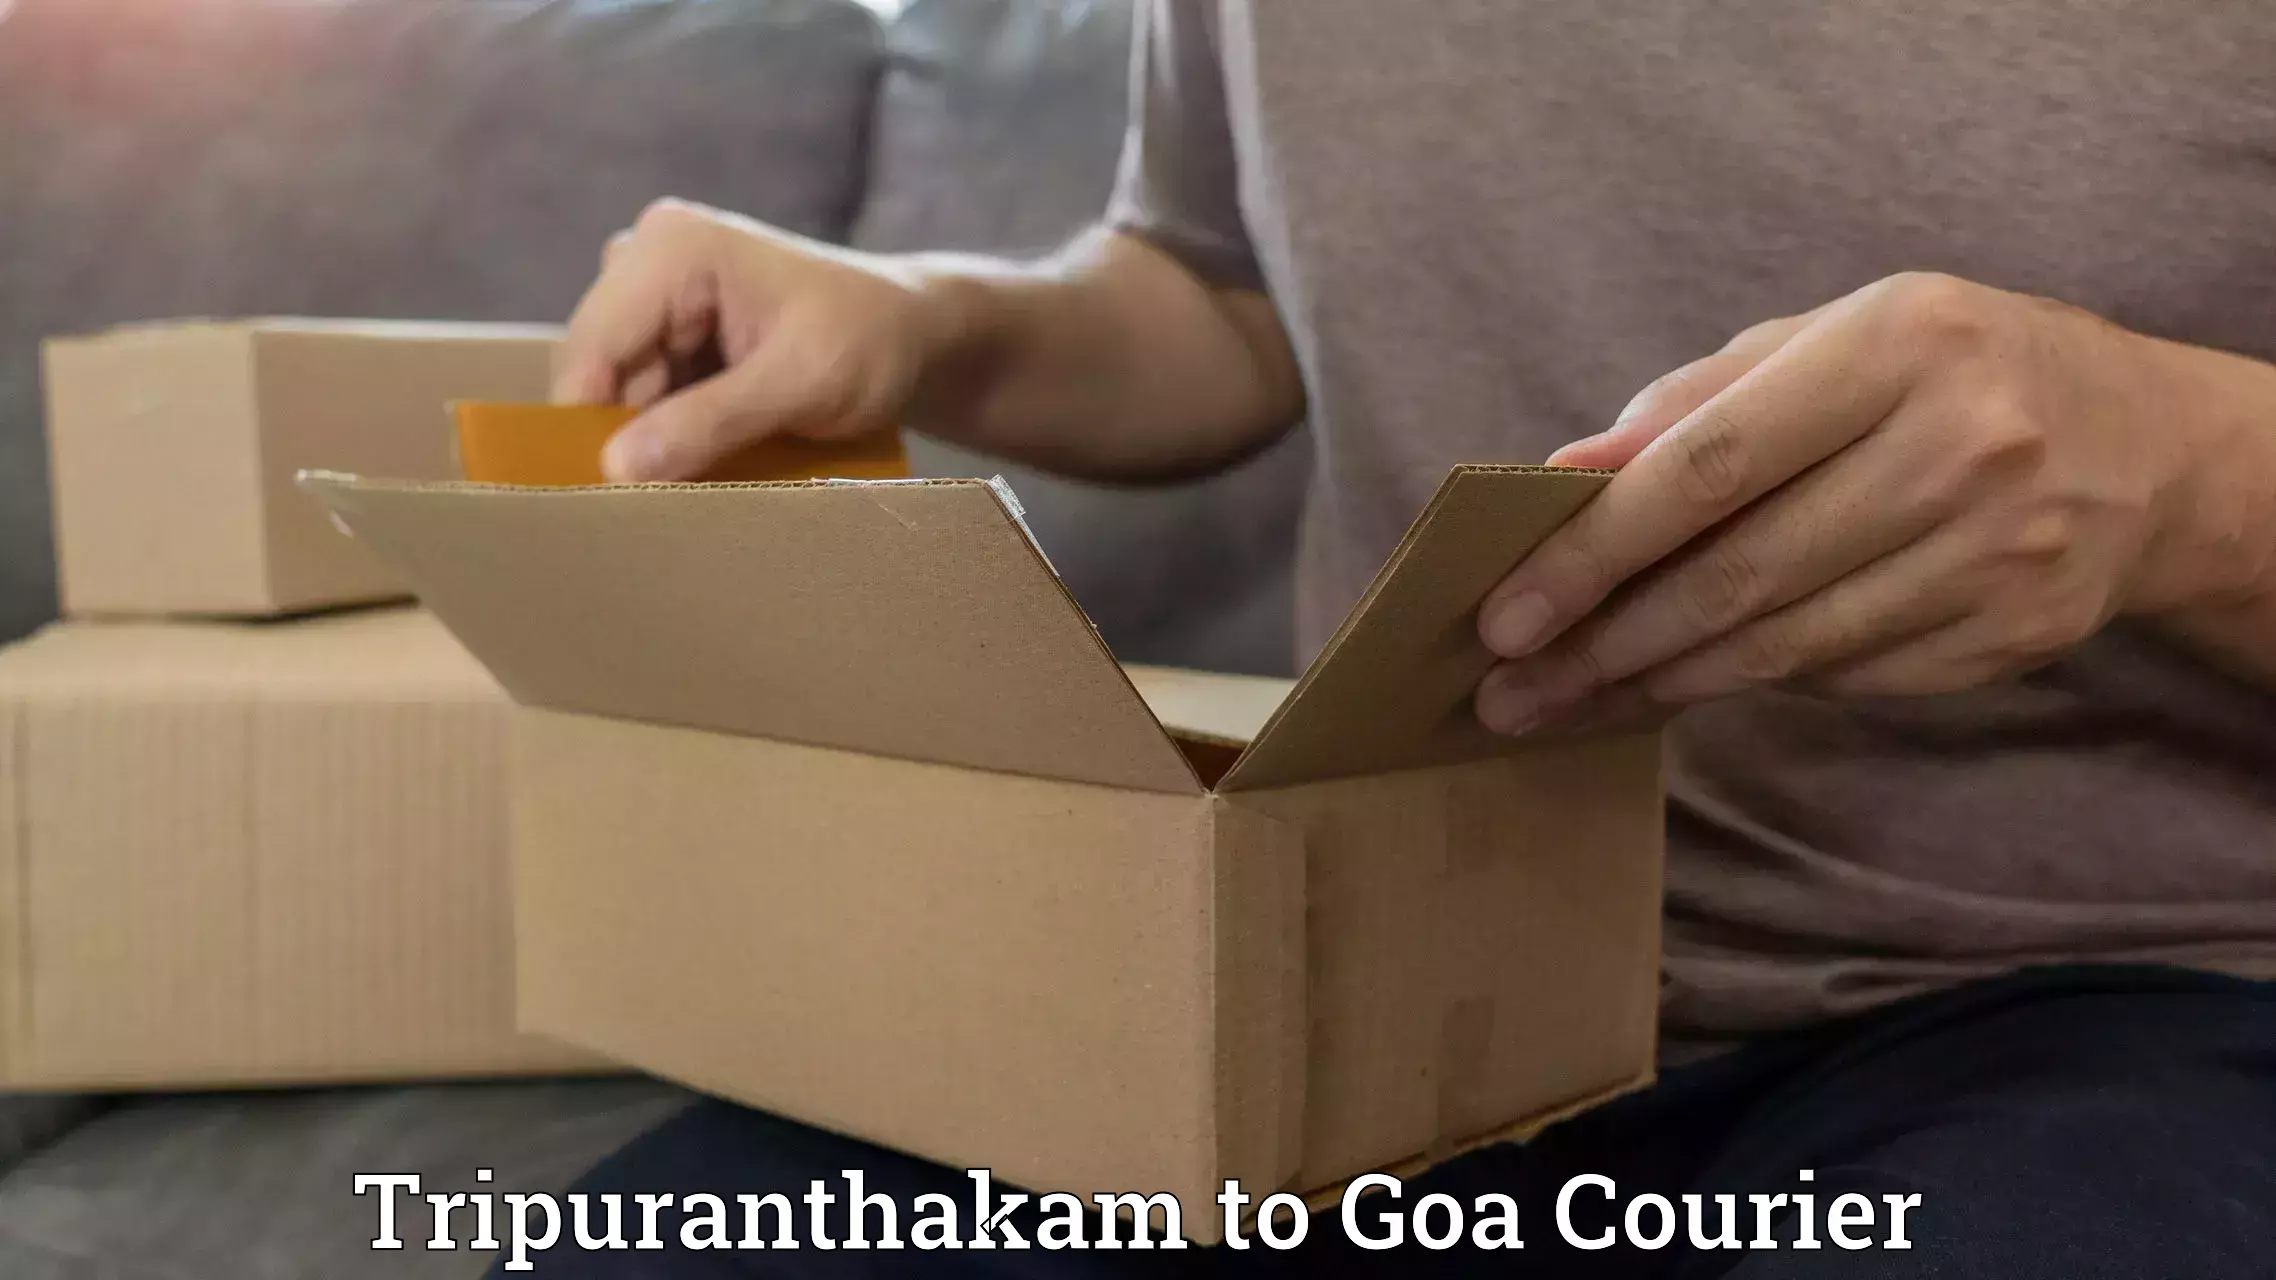 Subscription-based courier Tripuranthakam to Vasco da Gama